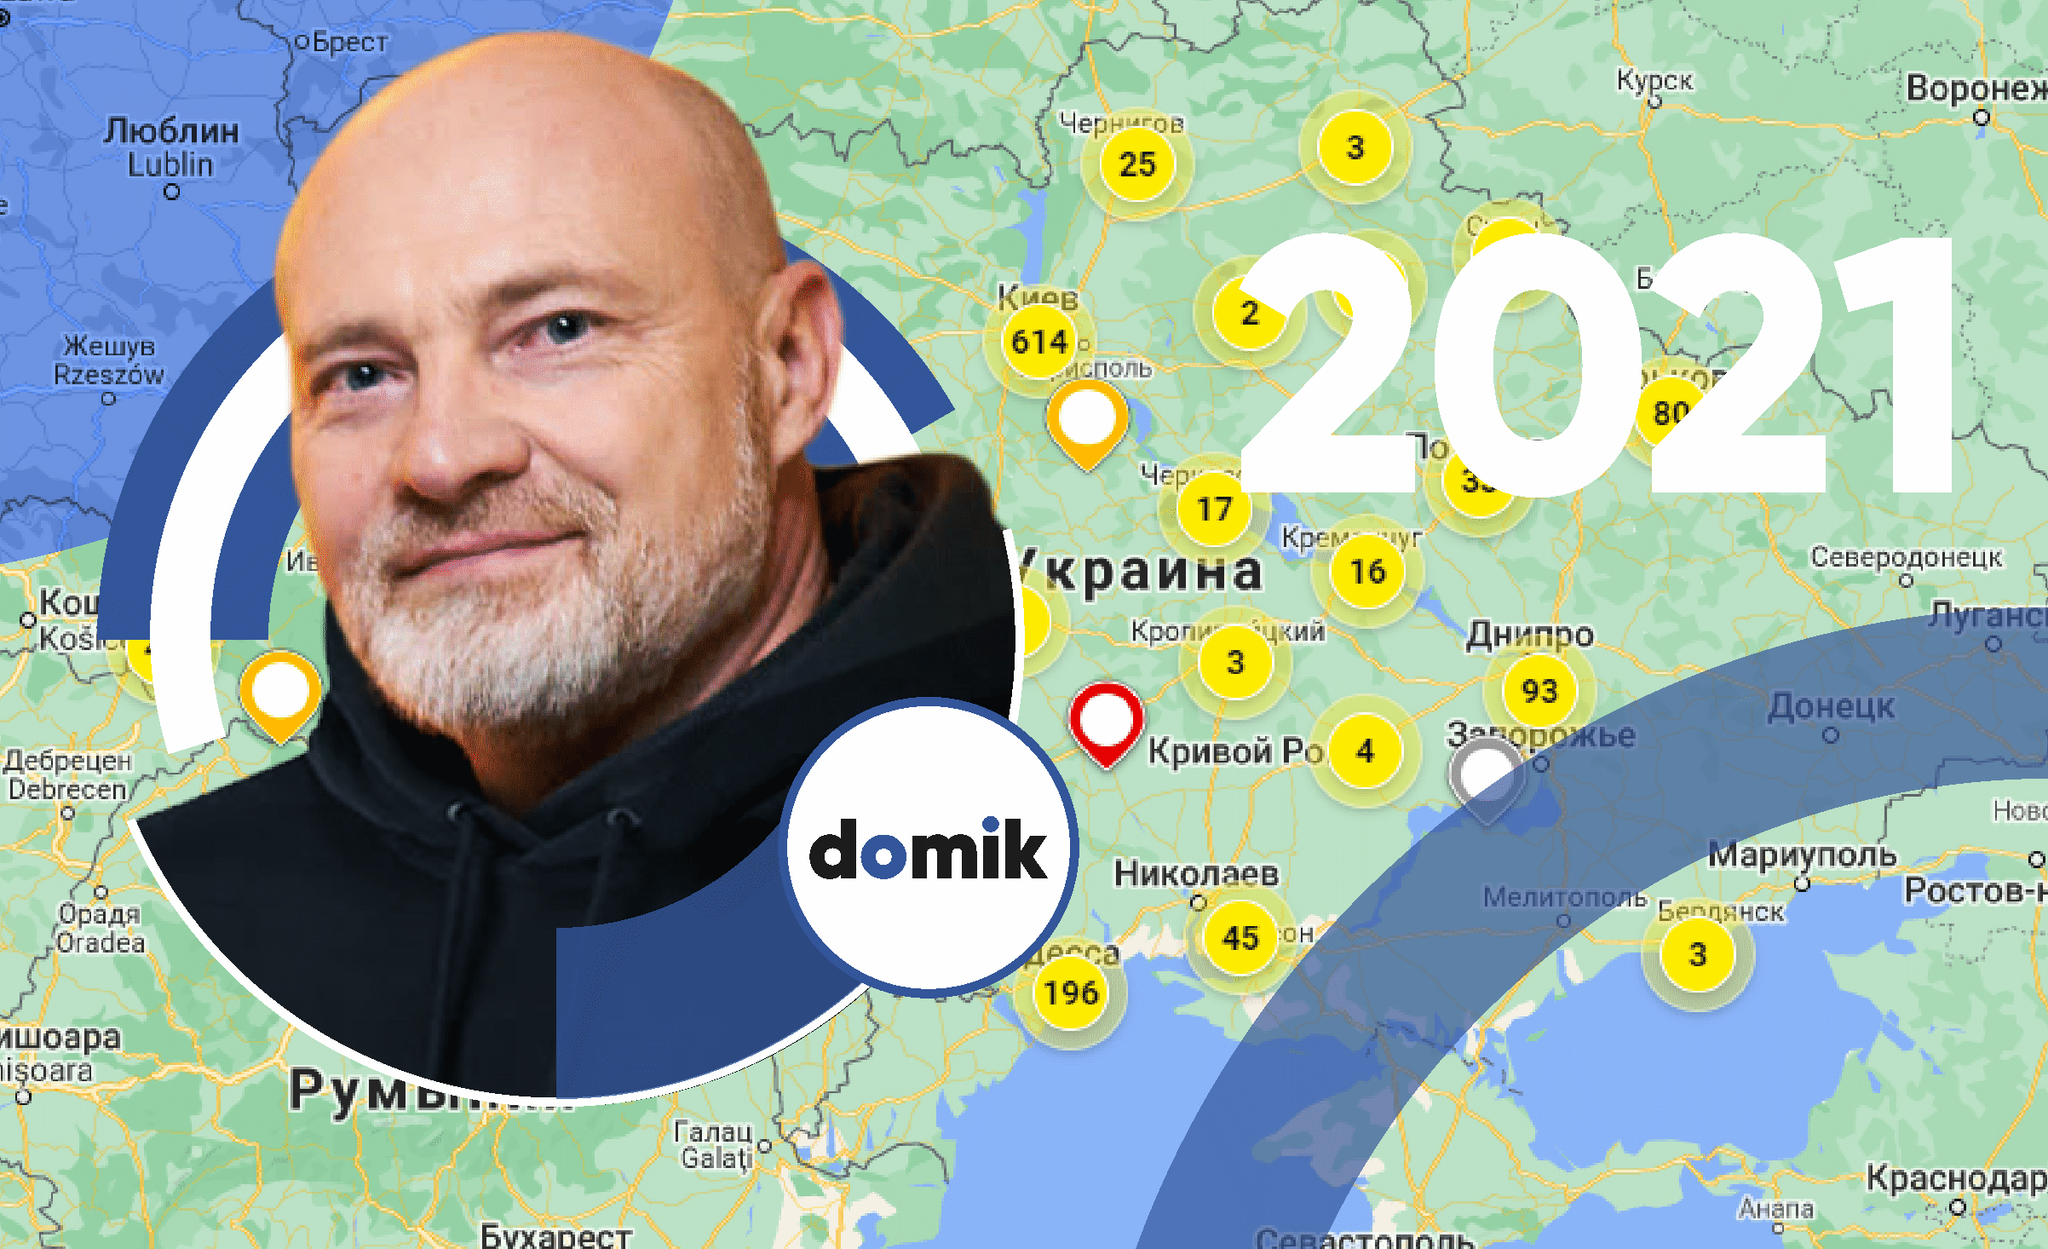 Підсумки 2021 року від Domik.ua: «Для всієї нашої команди рік був неймовірно насиченим»